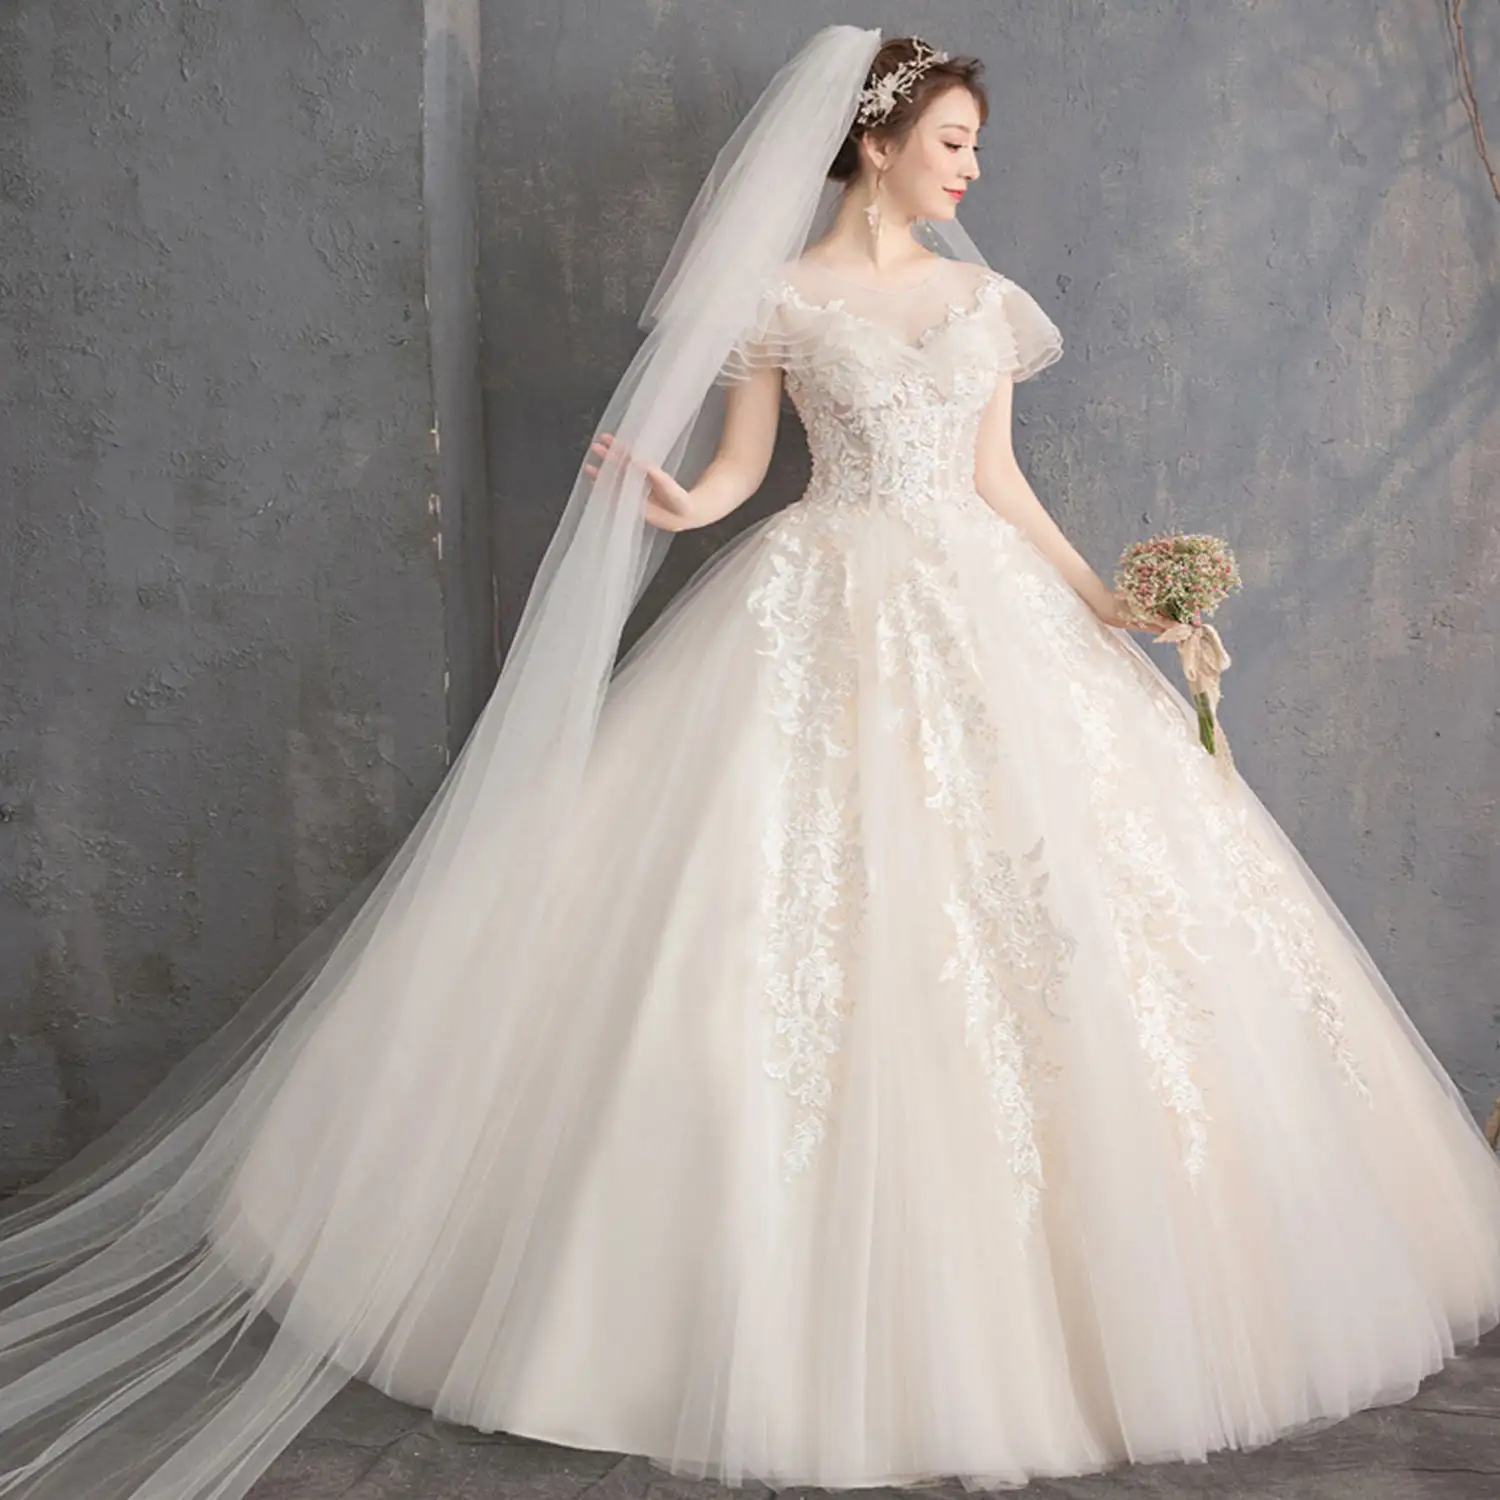 Elegant Wholesaleluxury Wedding Dress Bridal Gown Elegant Sleeve Lace Flowers Hollow Fashion White Wedding Dresses